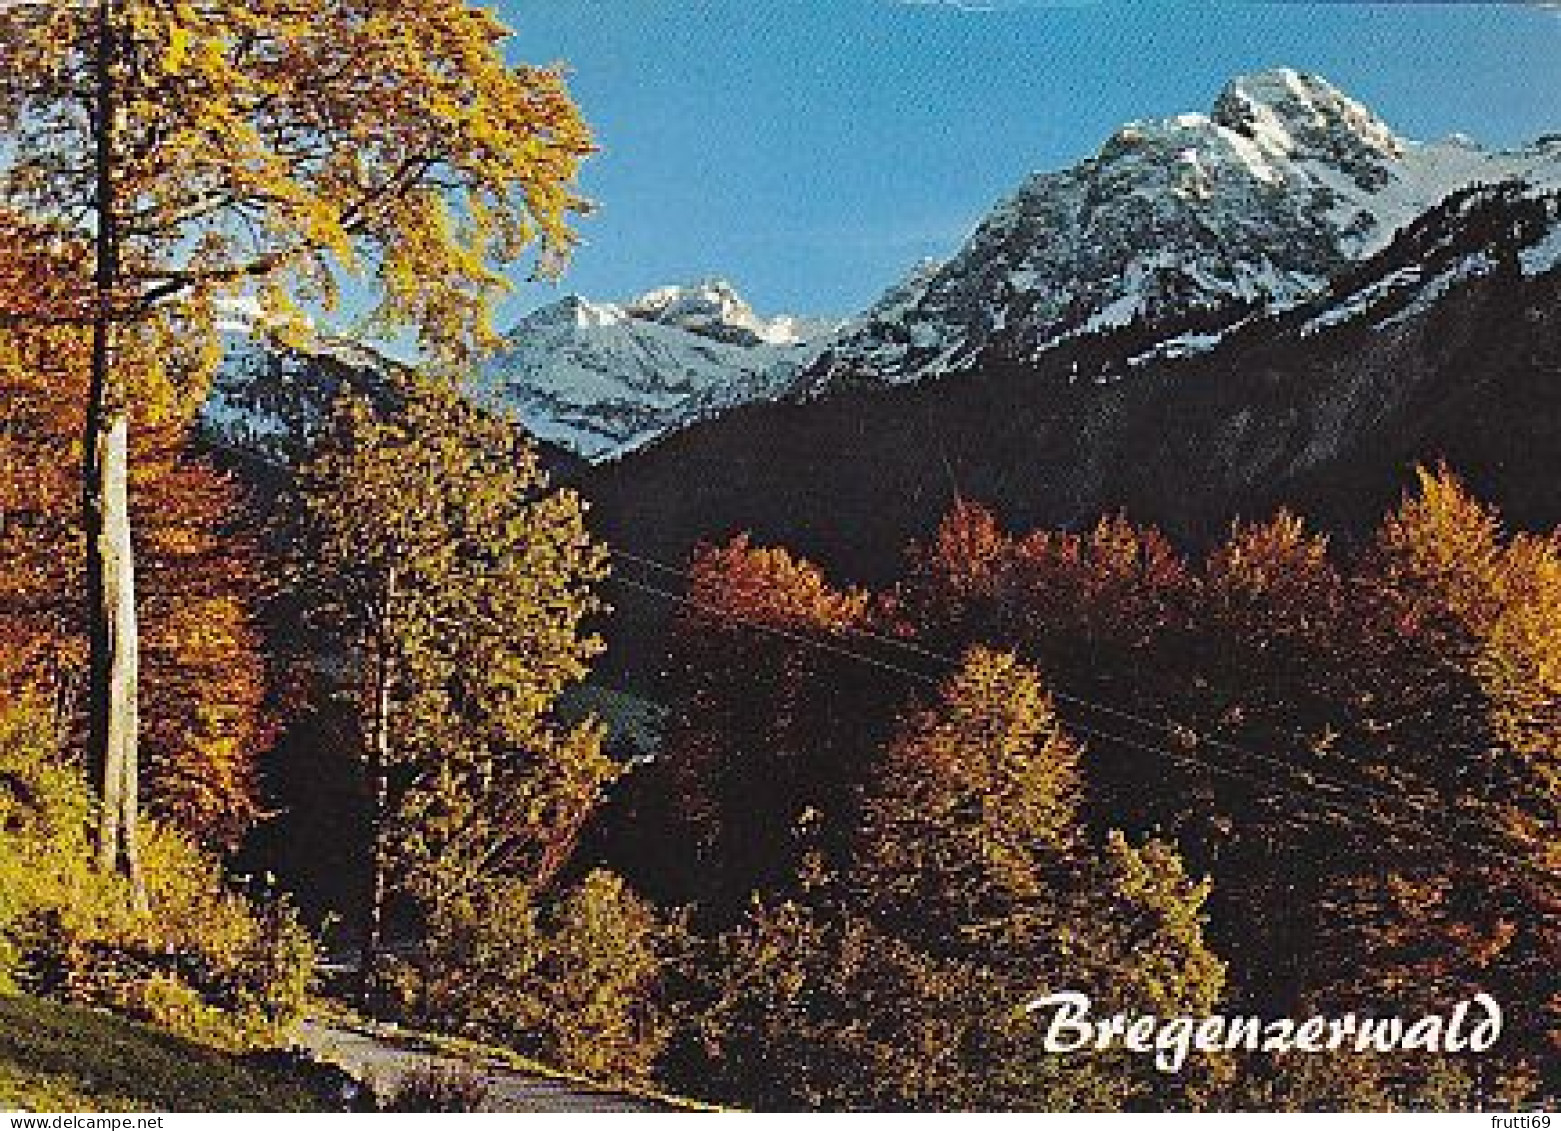 AK151549 AUSTRIA - Bregenzerwald - Bregenzerwaldorte